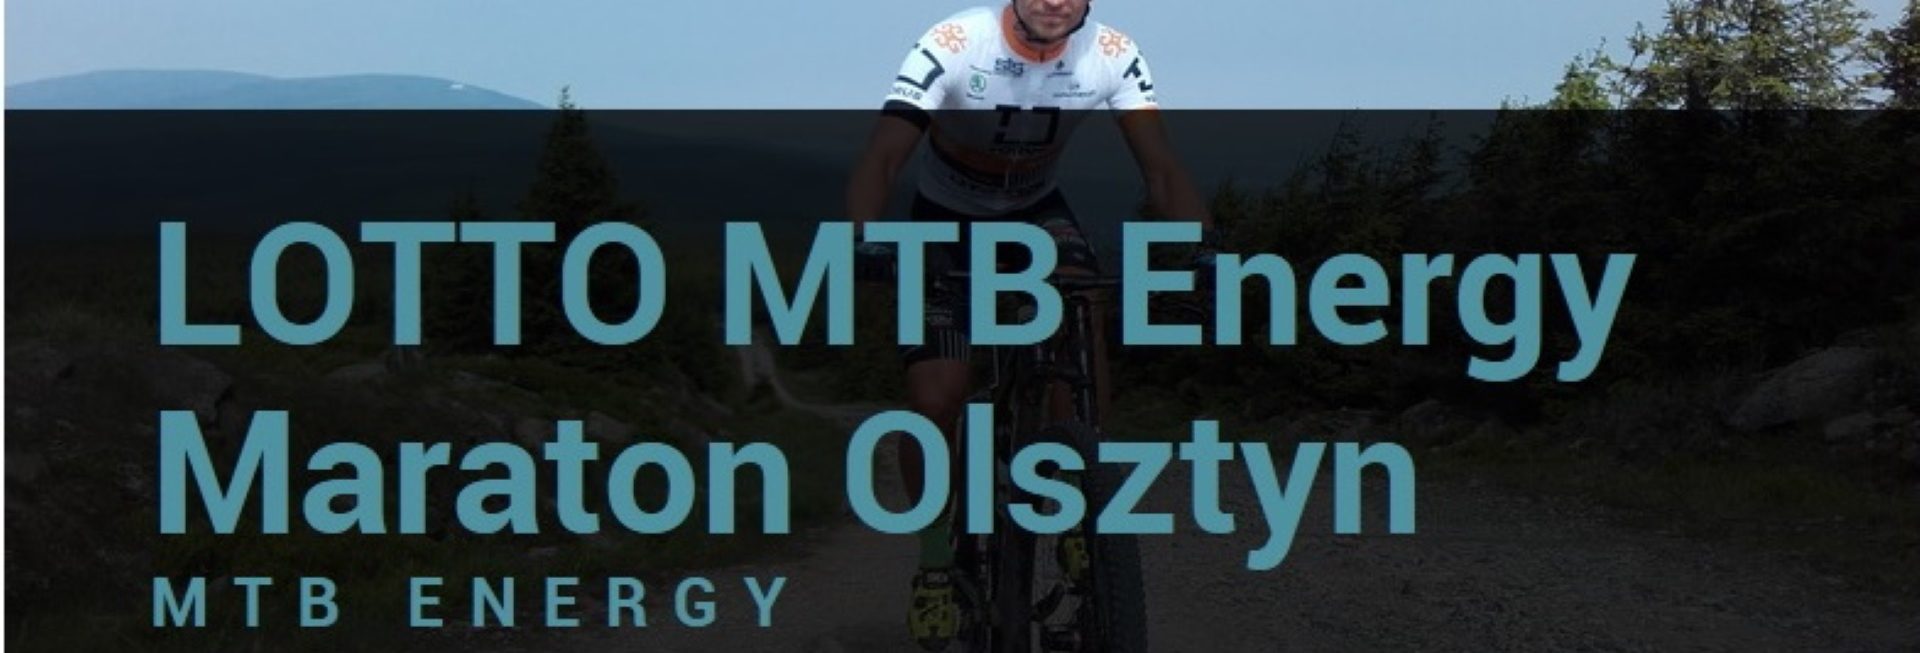 Plakat graficzny zapraszający do Olsztyna na LOTTO MTB Energy Maraton Olsztyn 2021.